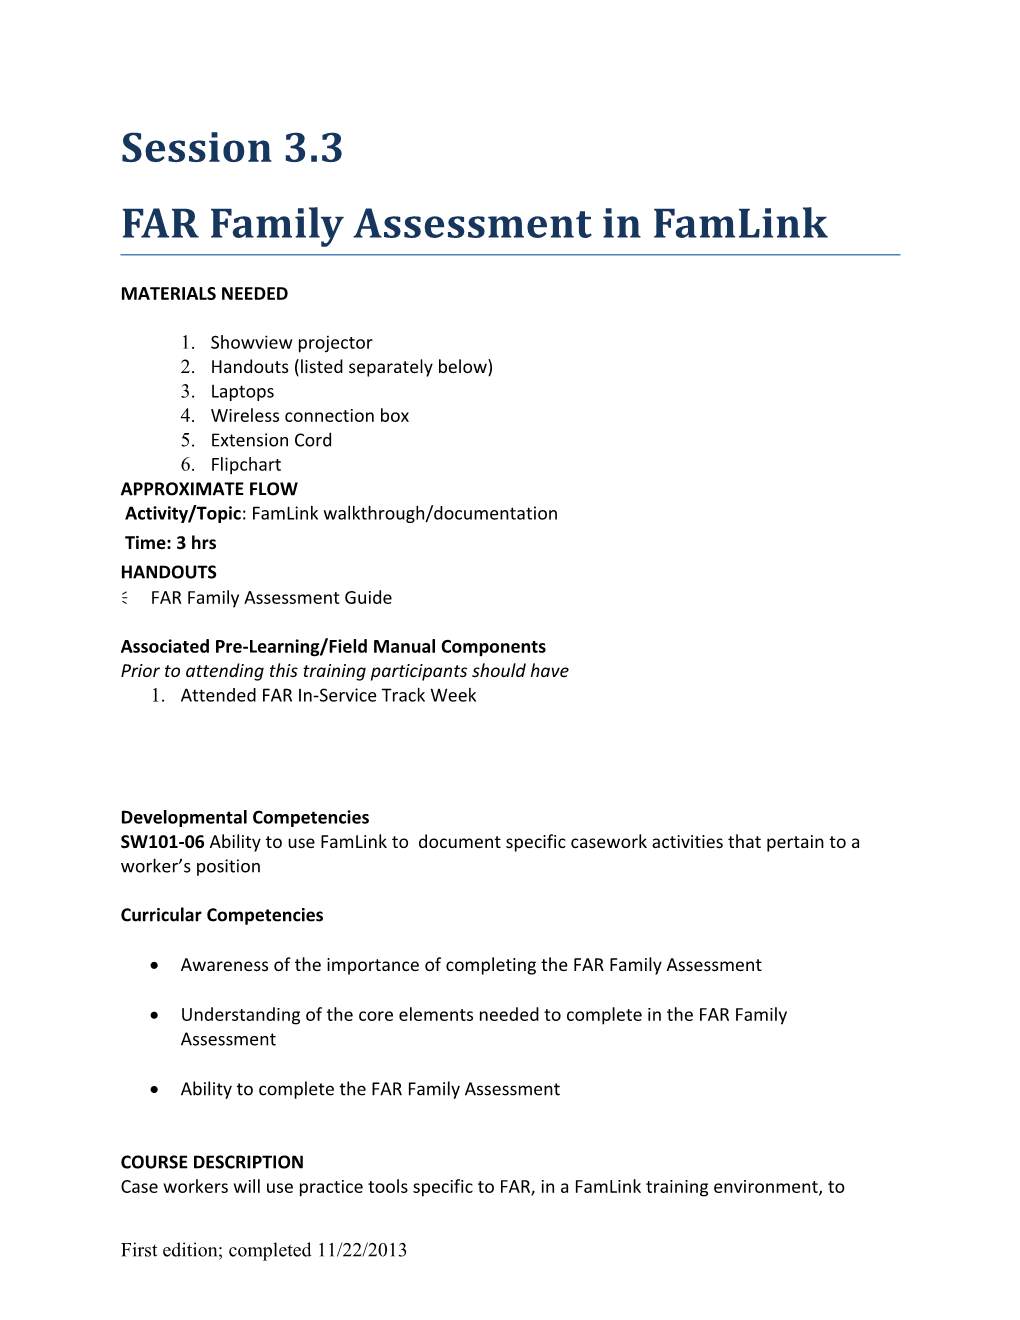 3.3 FAR Family Assessment in Famlink